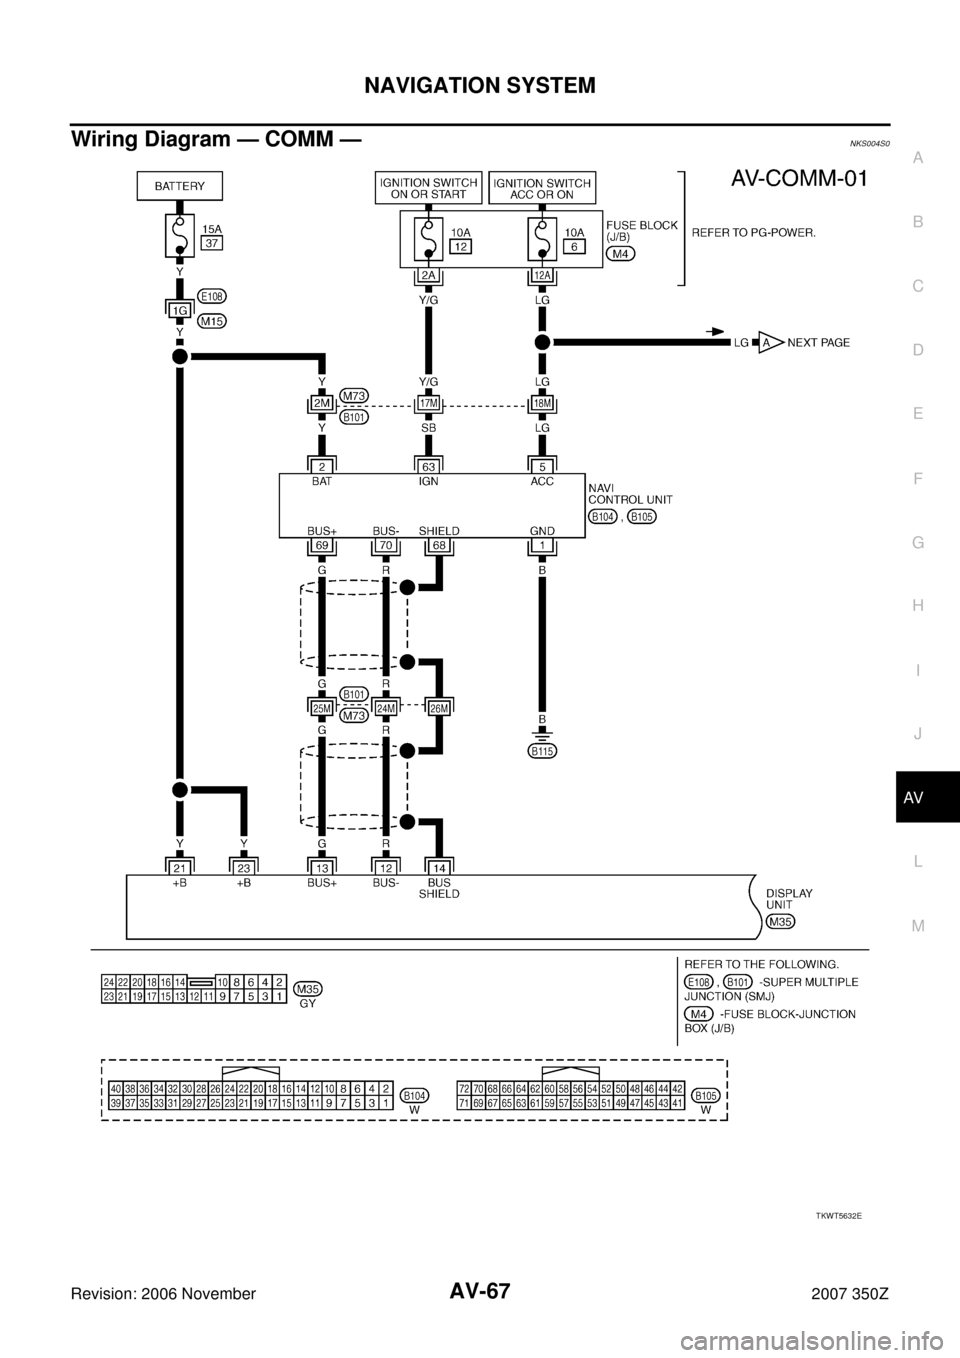 NISSAN 350Z 2007 Z33 Audio Visual, Navigation And Telephone System NAVIGATION SYSTEM
AV-67
C
D
E
F
G
H
I
J
L
MA
B
AV
Revision: 2006 November2007 350Z
Wiring Diagram — COMM — NKS004S0
TKWT5632E 